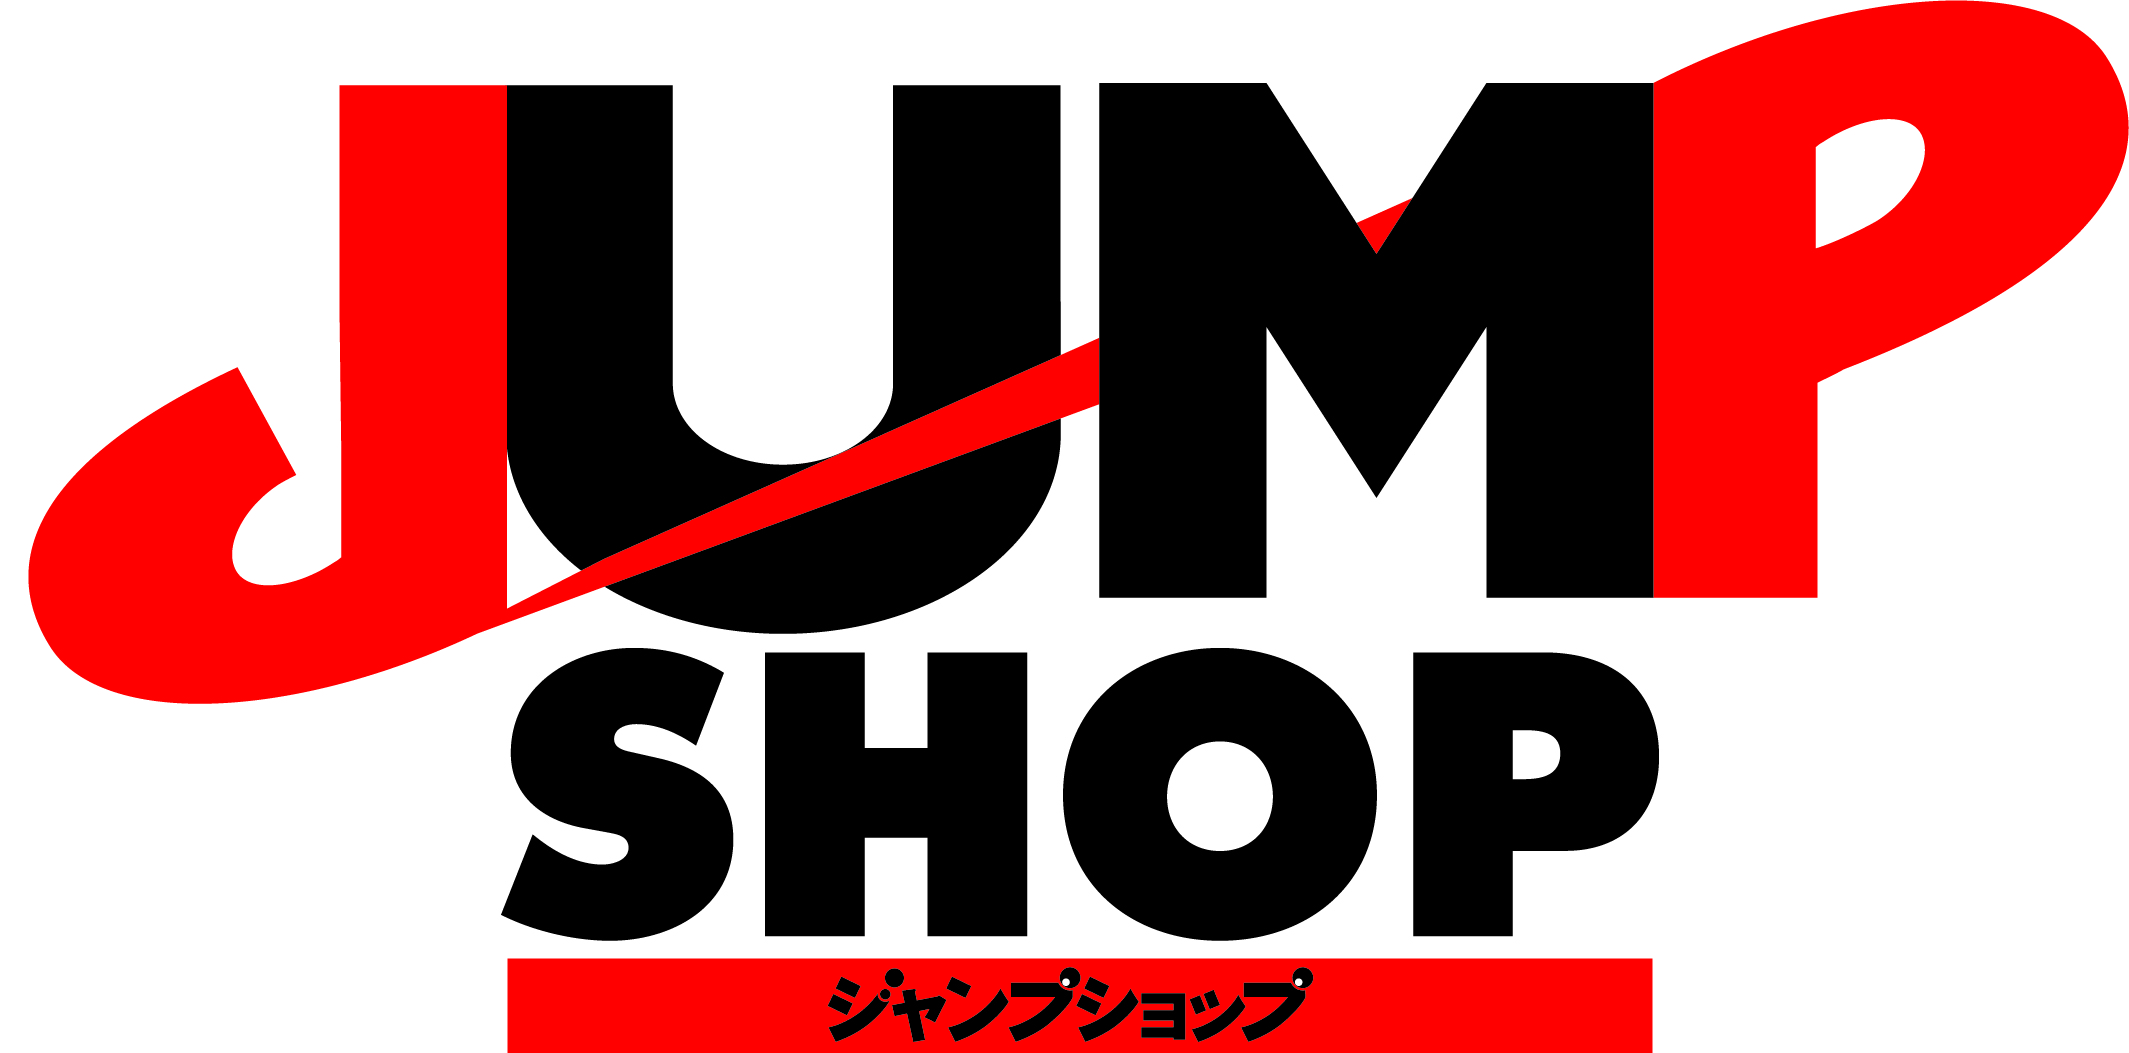 21年2月8日 月 期間限定 鬼滅の刃 グッズショップin Jump Shop東京 アクアシティお台場店のチケット情報 予約 購入 販売 ライヴポケット